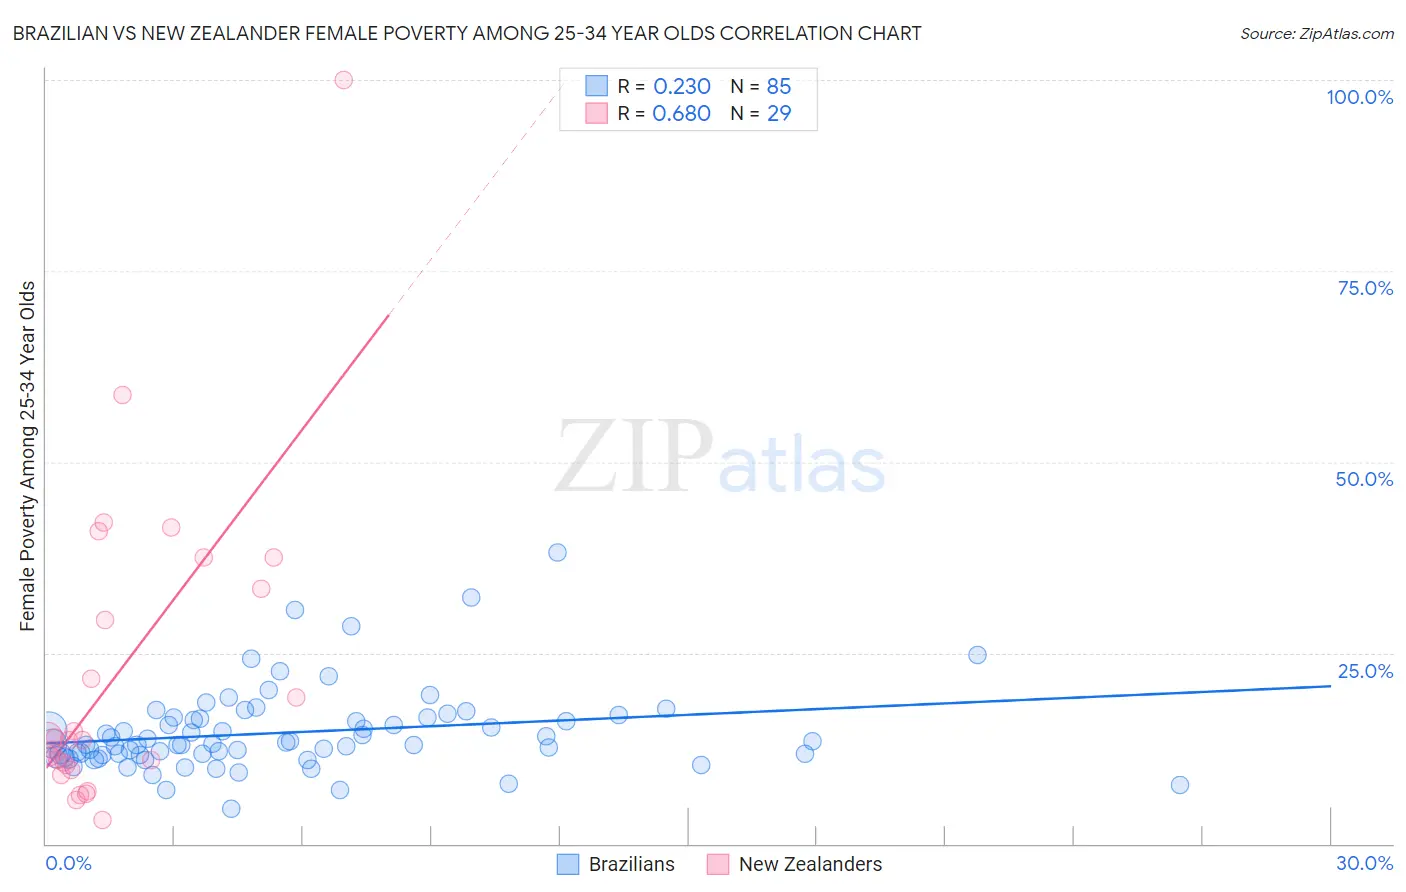 Brazilian vs New Zealander Female Poverty Among 25-34 Year Olds